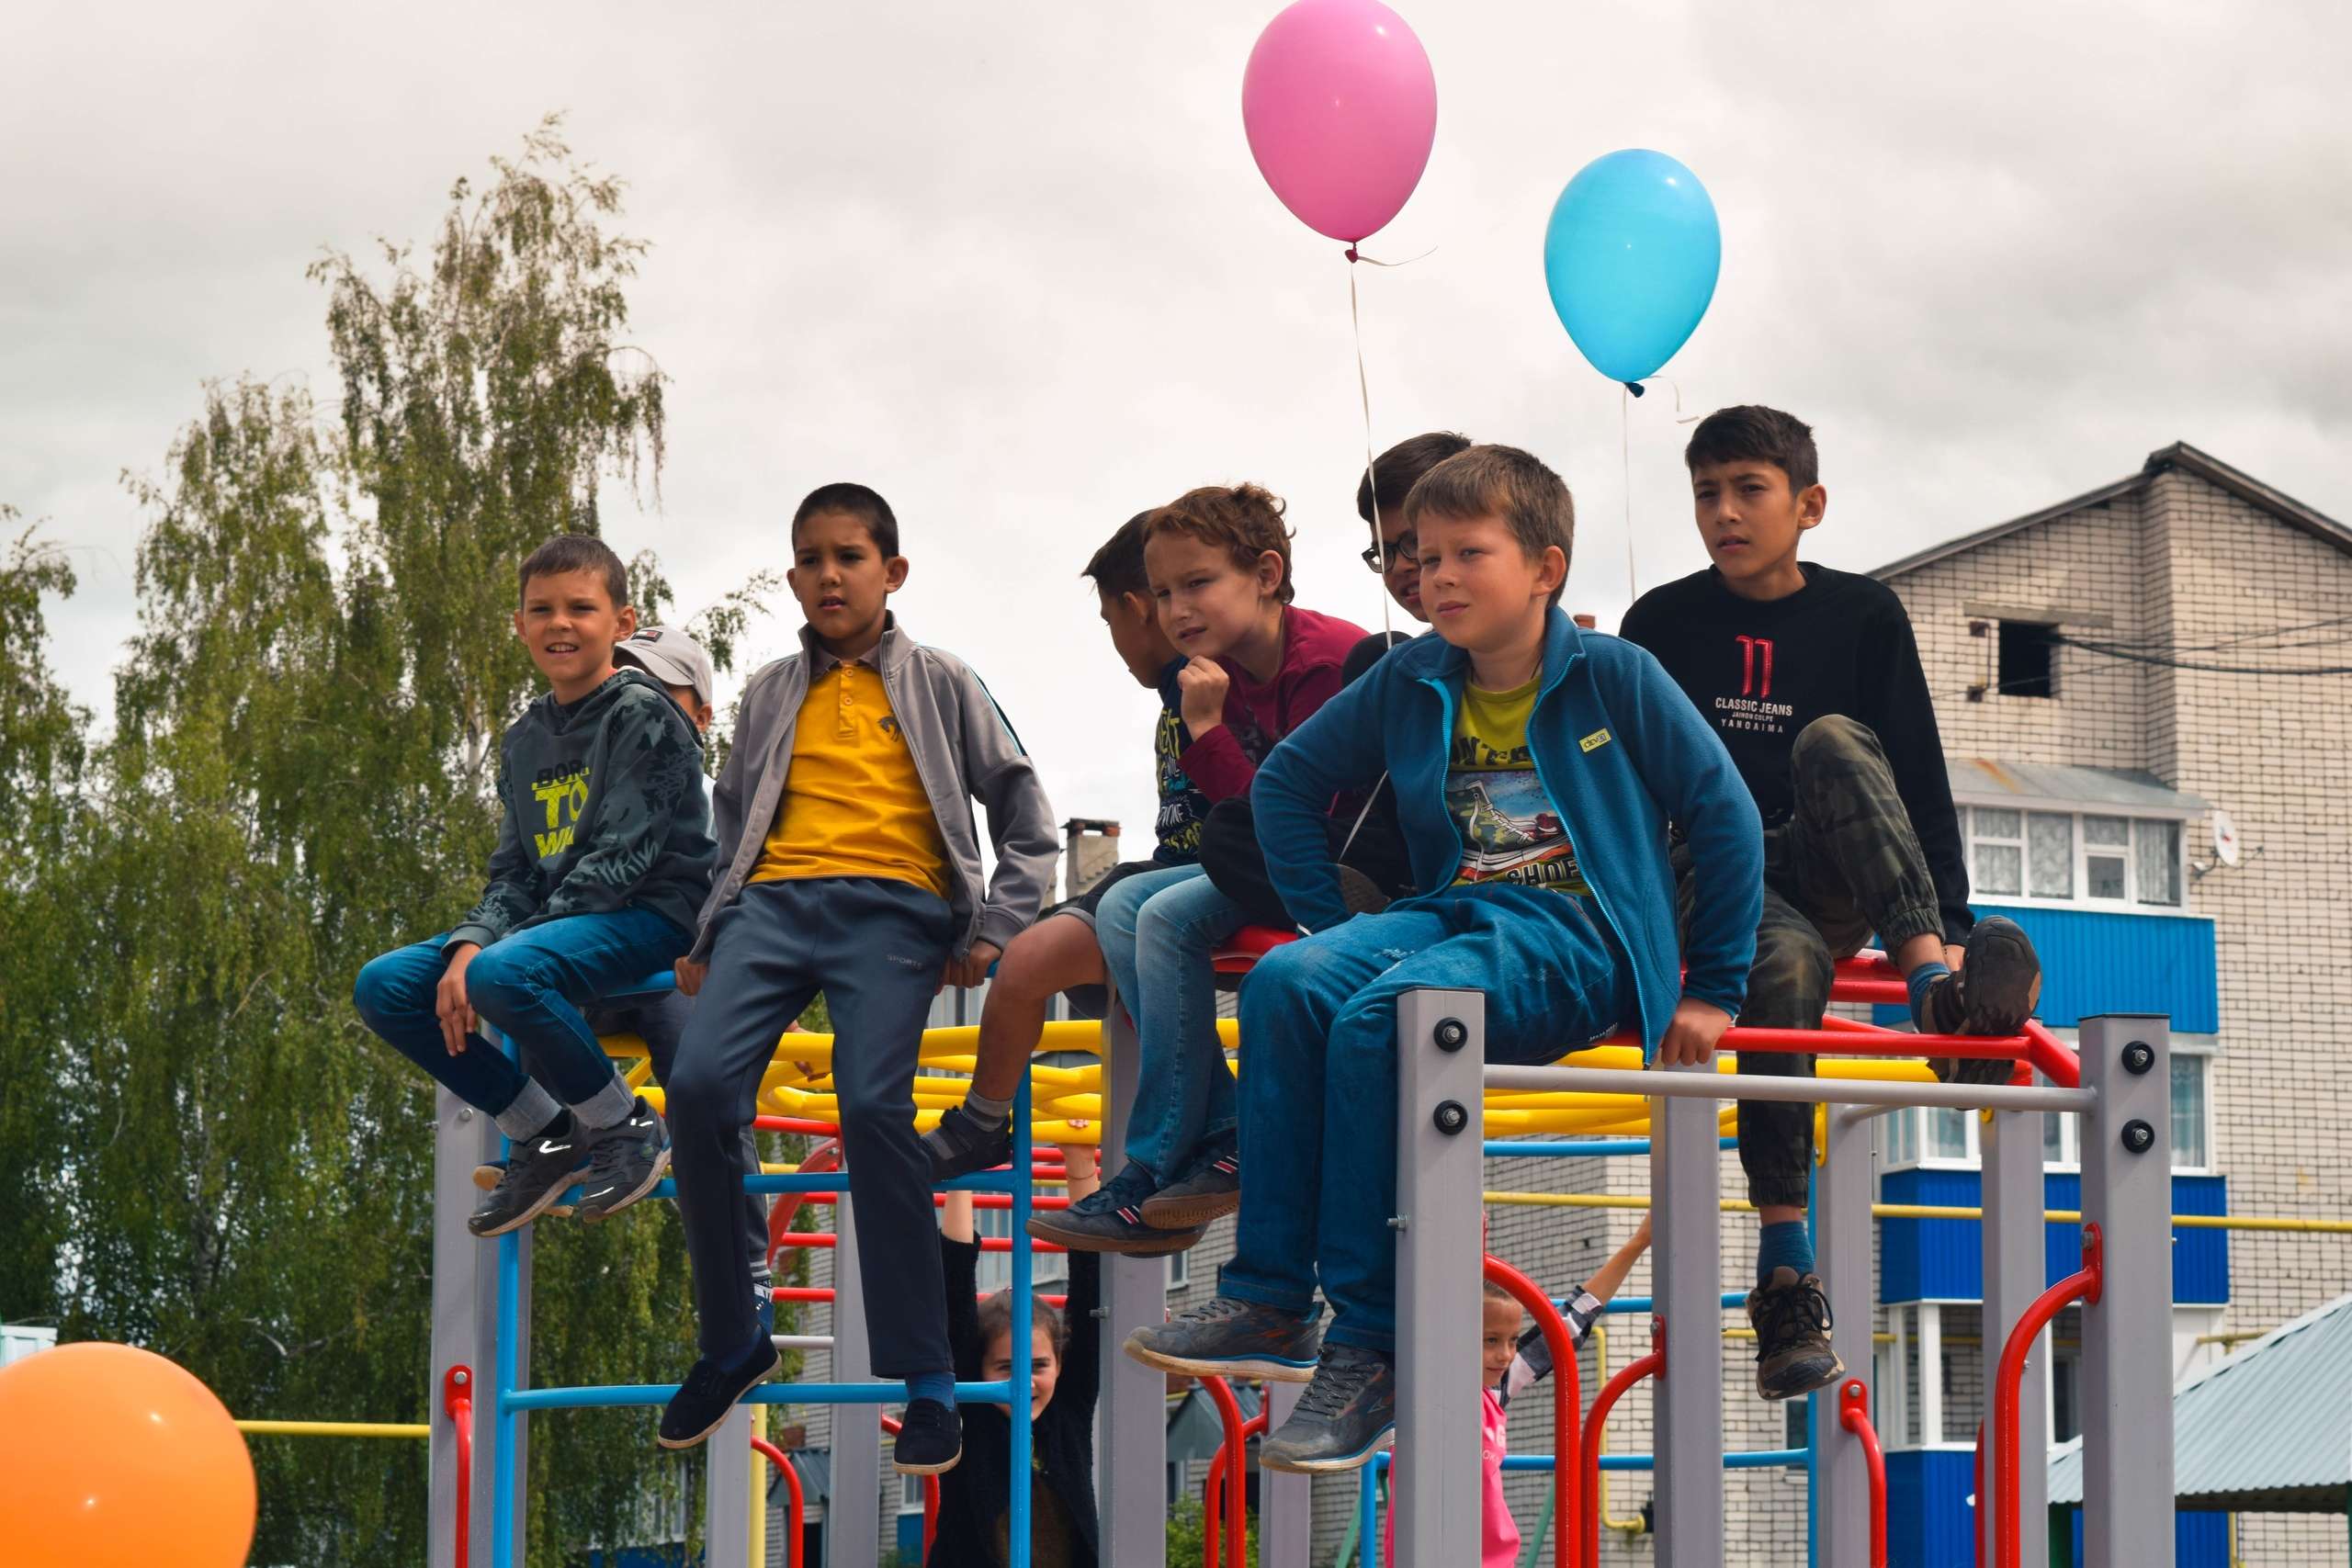 Gazprom Transgaz Nizhny Novgorod builds children’s playground in Morki settlement